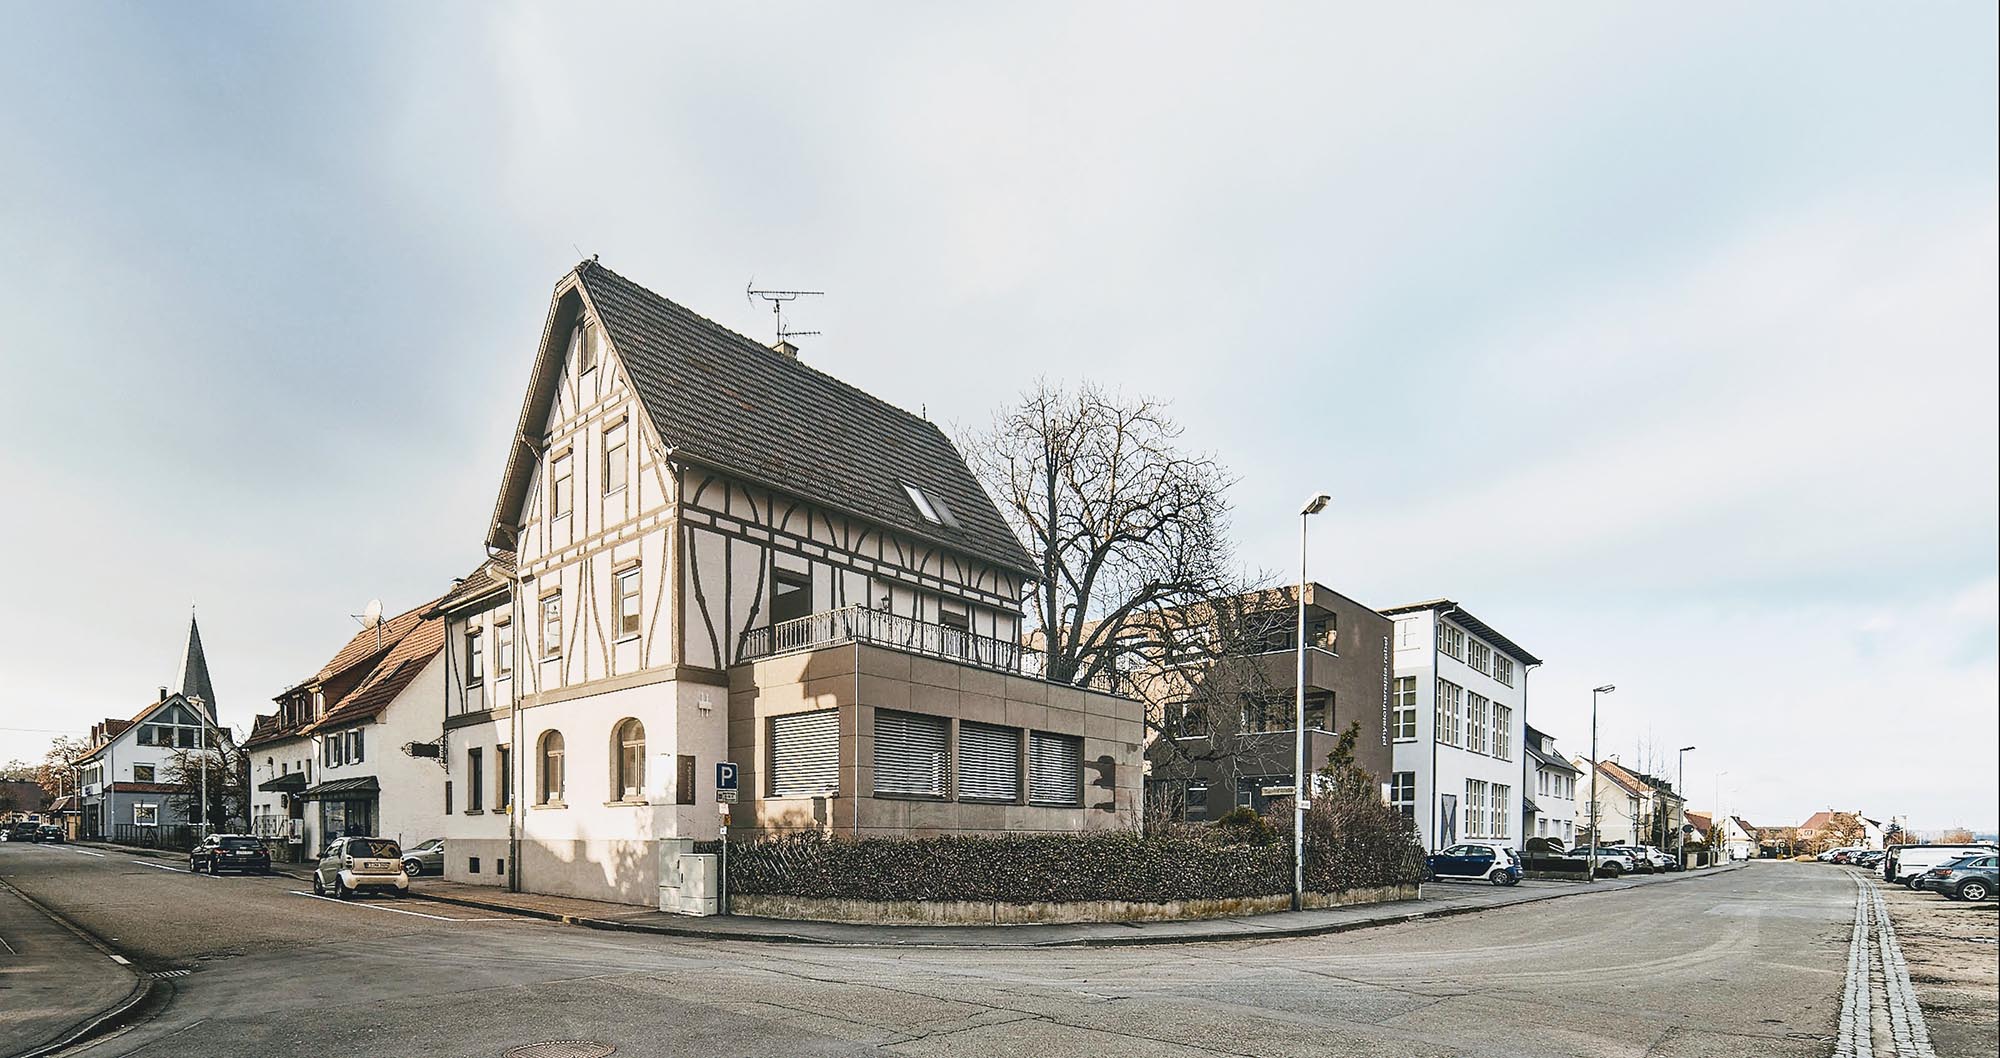 Renoviertes Fachwerkgebäude von 1911, ehemalige Bahnhofsrestauration, in dem sich das Architekturbüro befindet